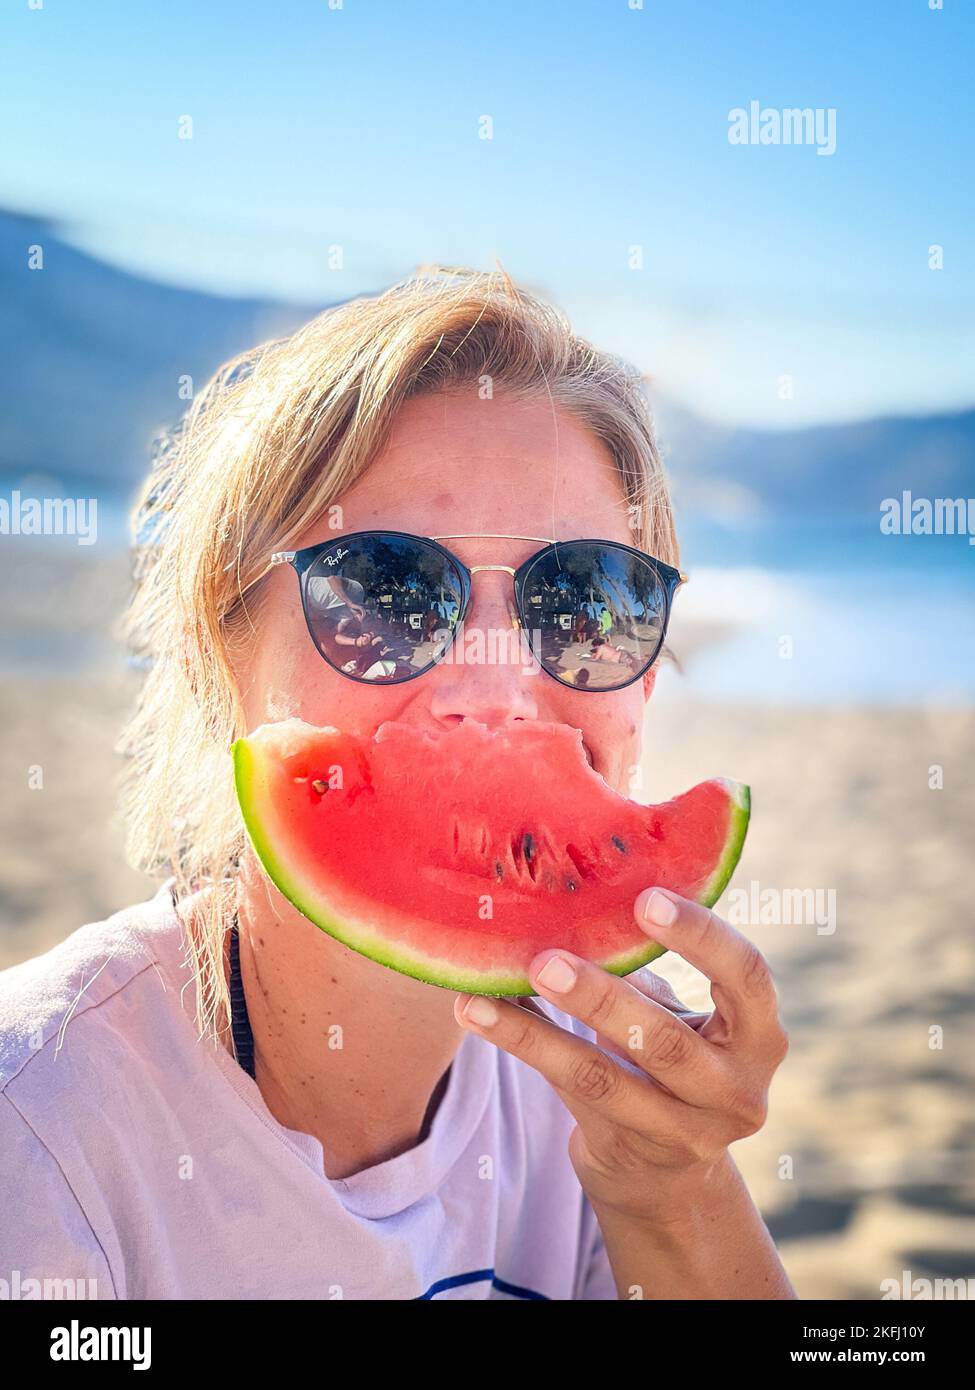 Nahaufnahme eines Porträts einer Frau mittleren Erwachsenen, die eine Sonnenbrille trägt und während der Sommerferien am Strand Wassermelonenscheiben isst Stockfoto